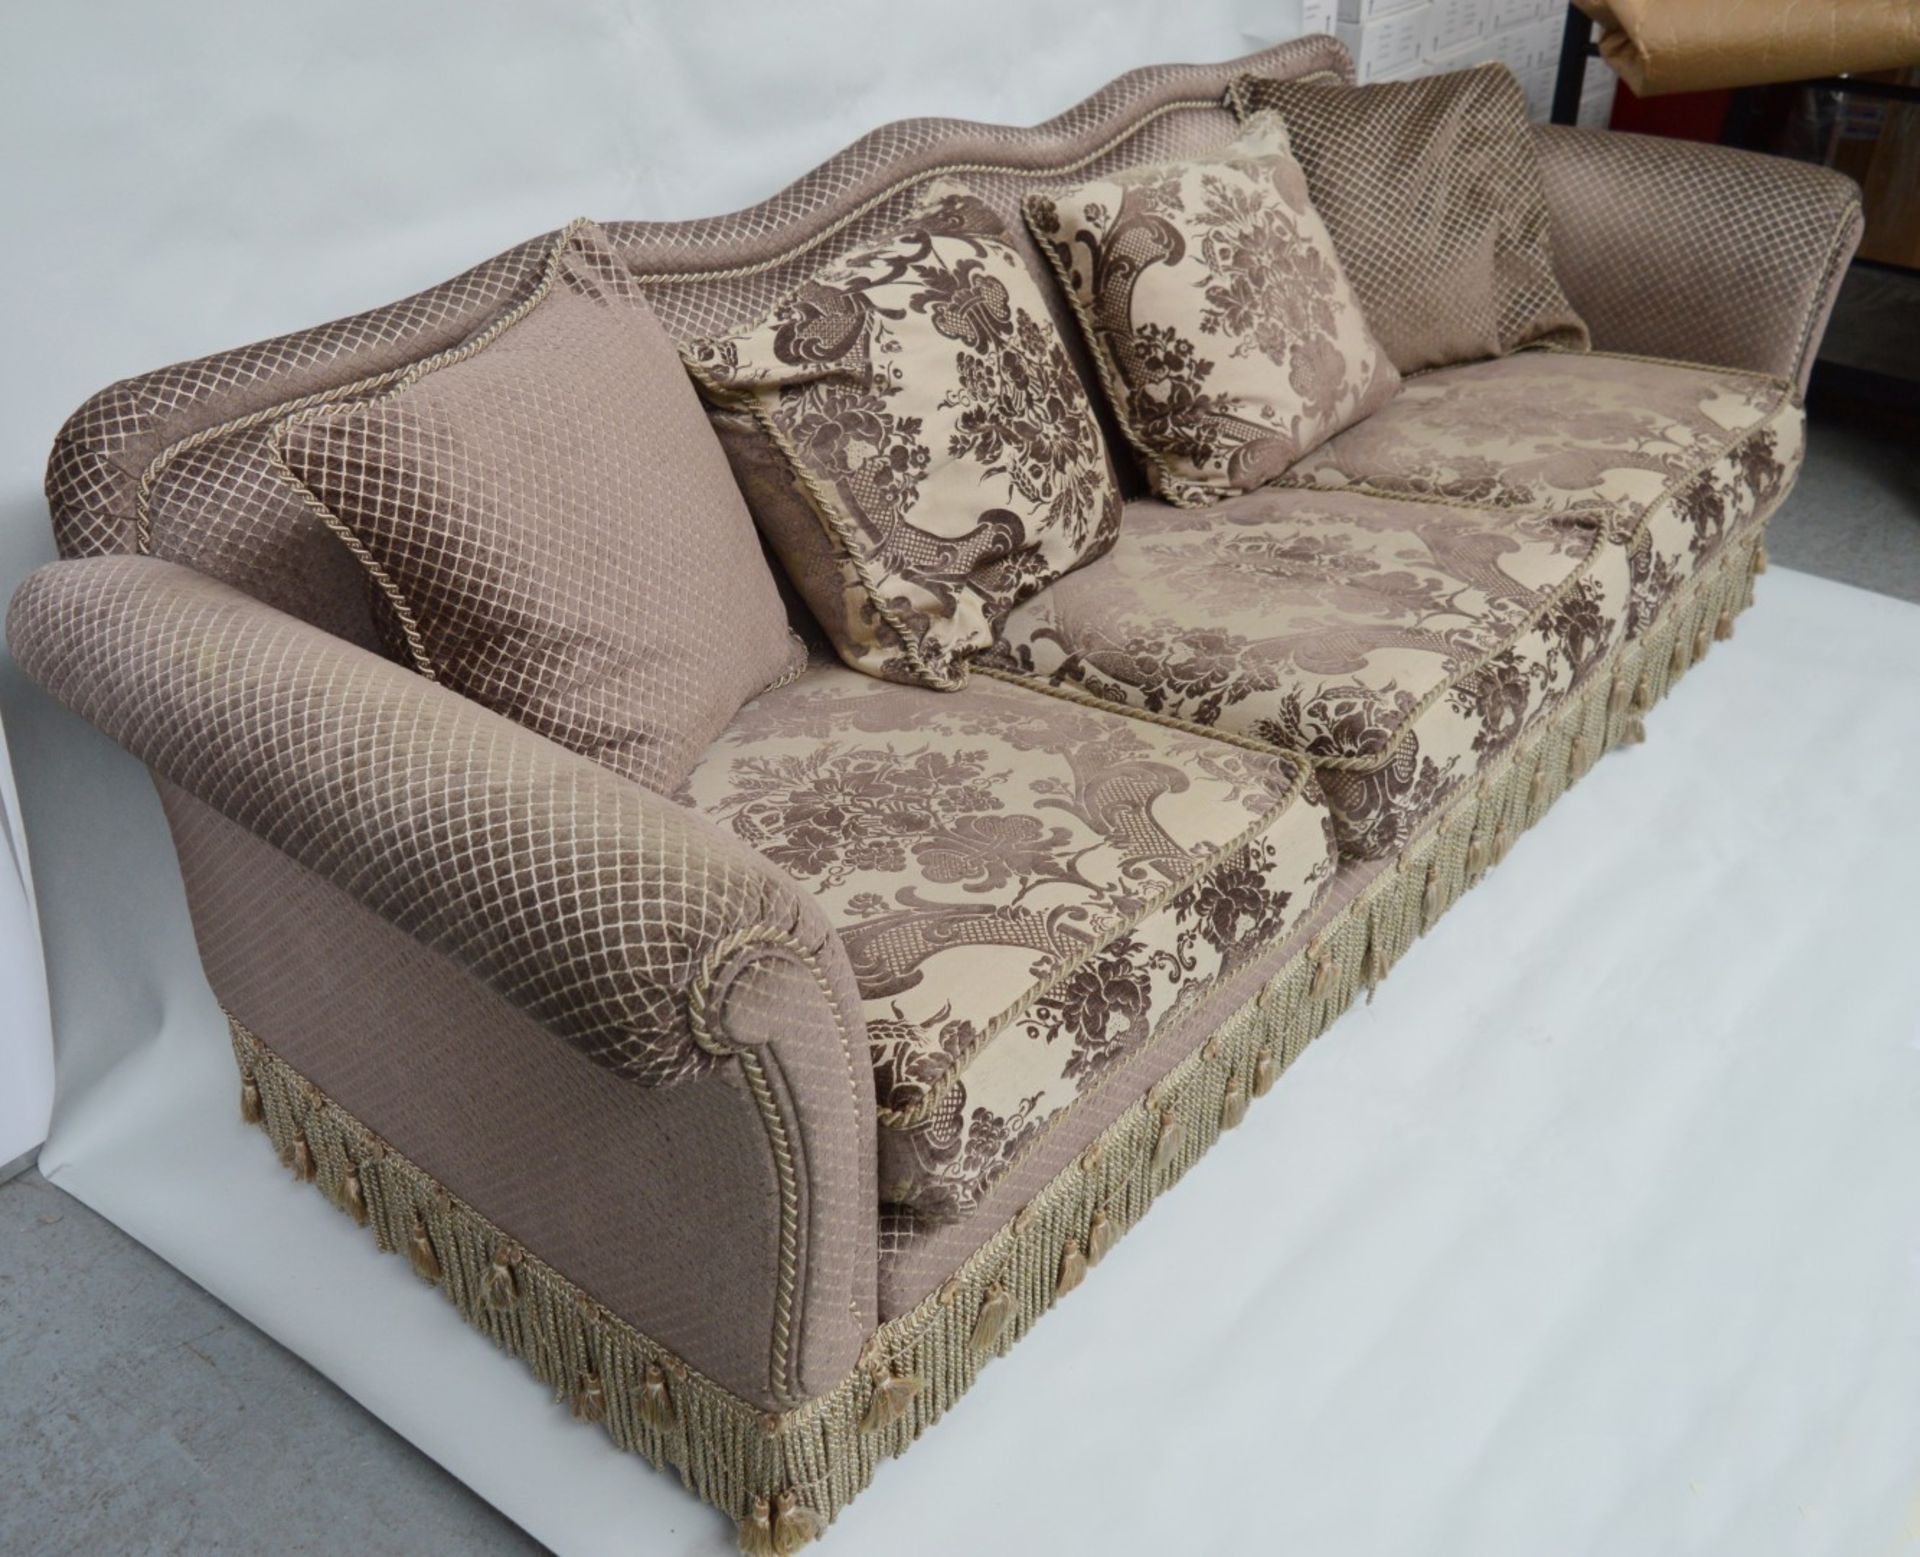 1 x Parker & Farr Abigail Special Sofa - Dimensions W240 x H87 x D89cm - Ref: 4081161 - CL087 - - Image 9 of 10